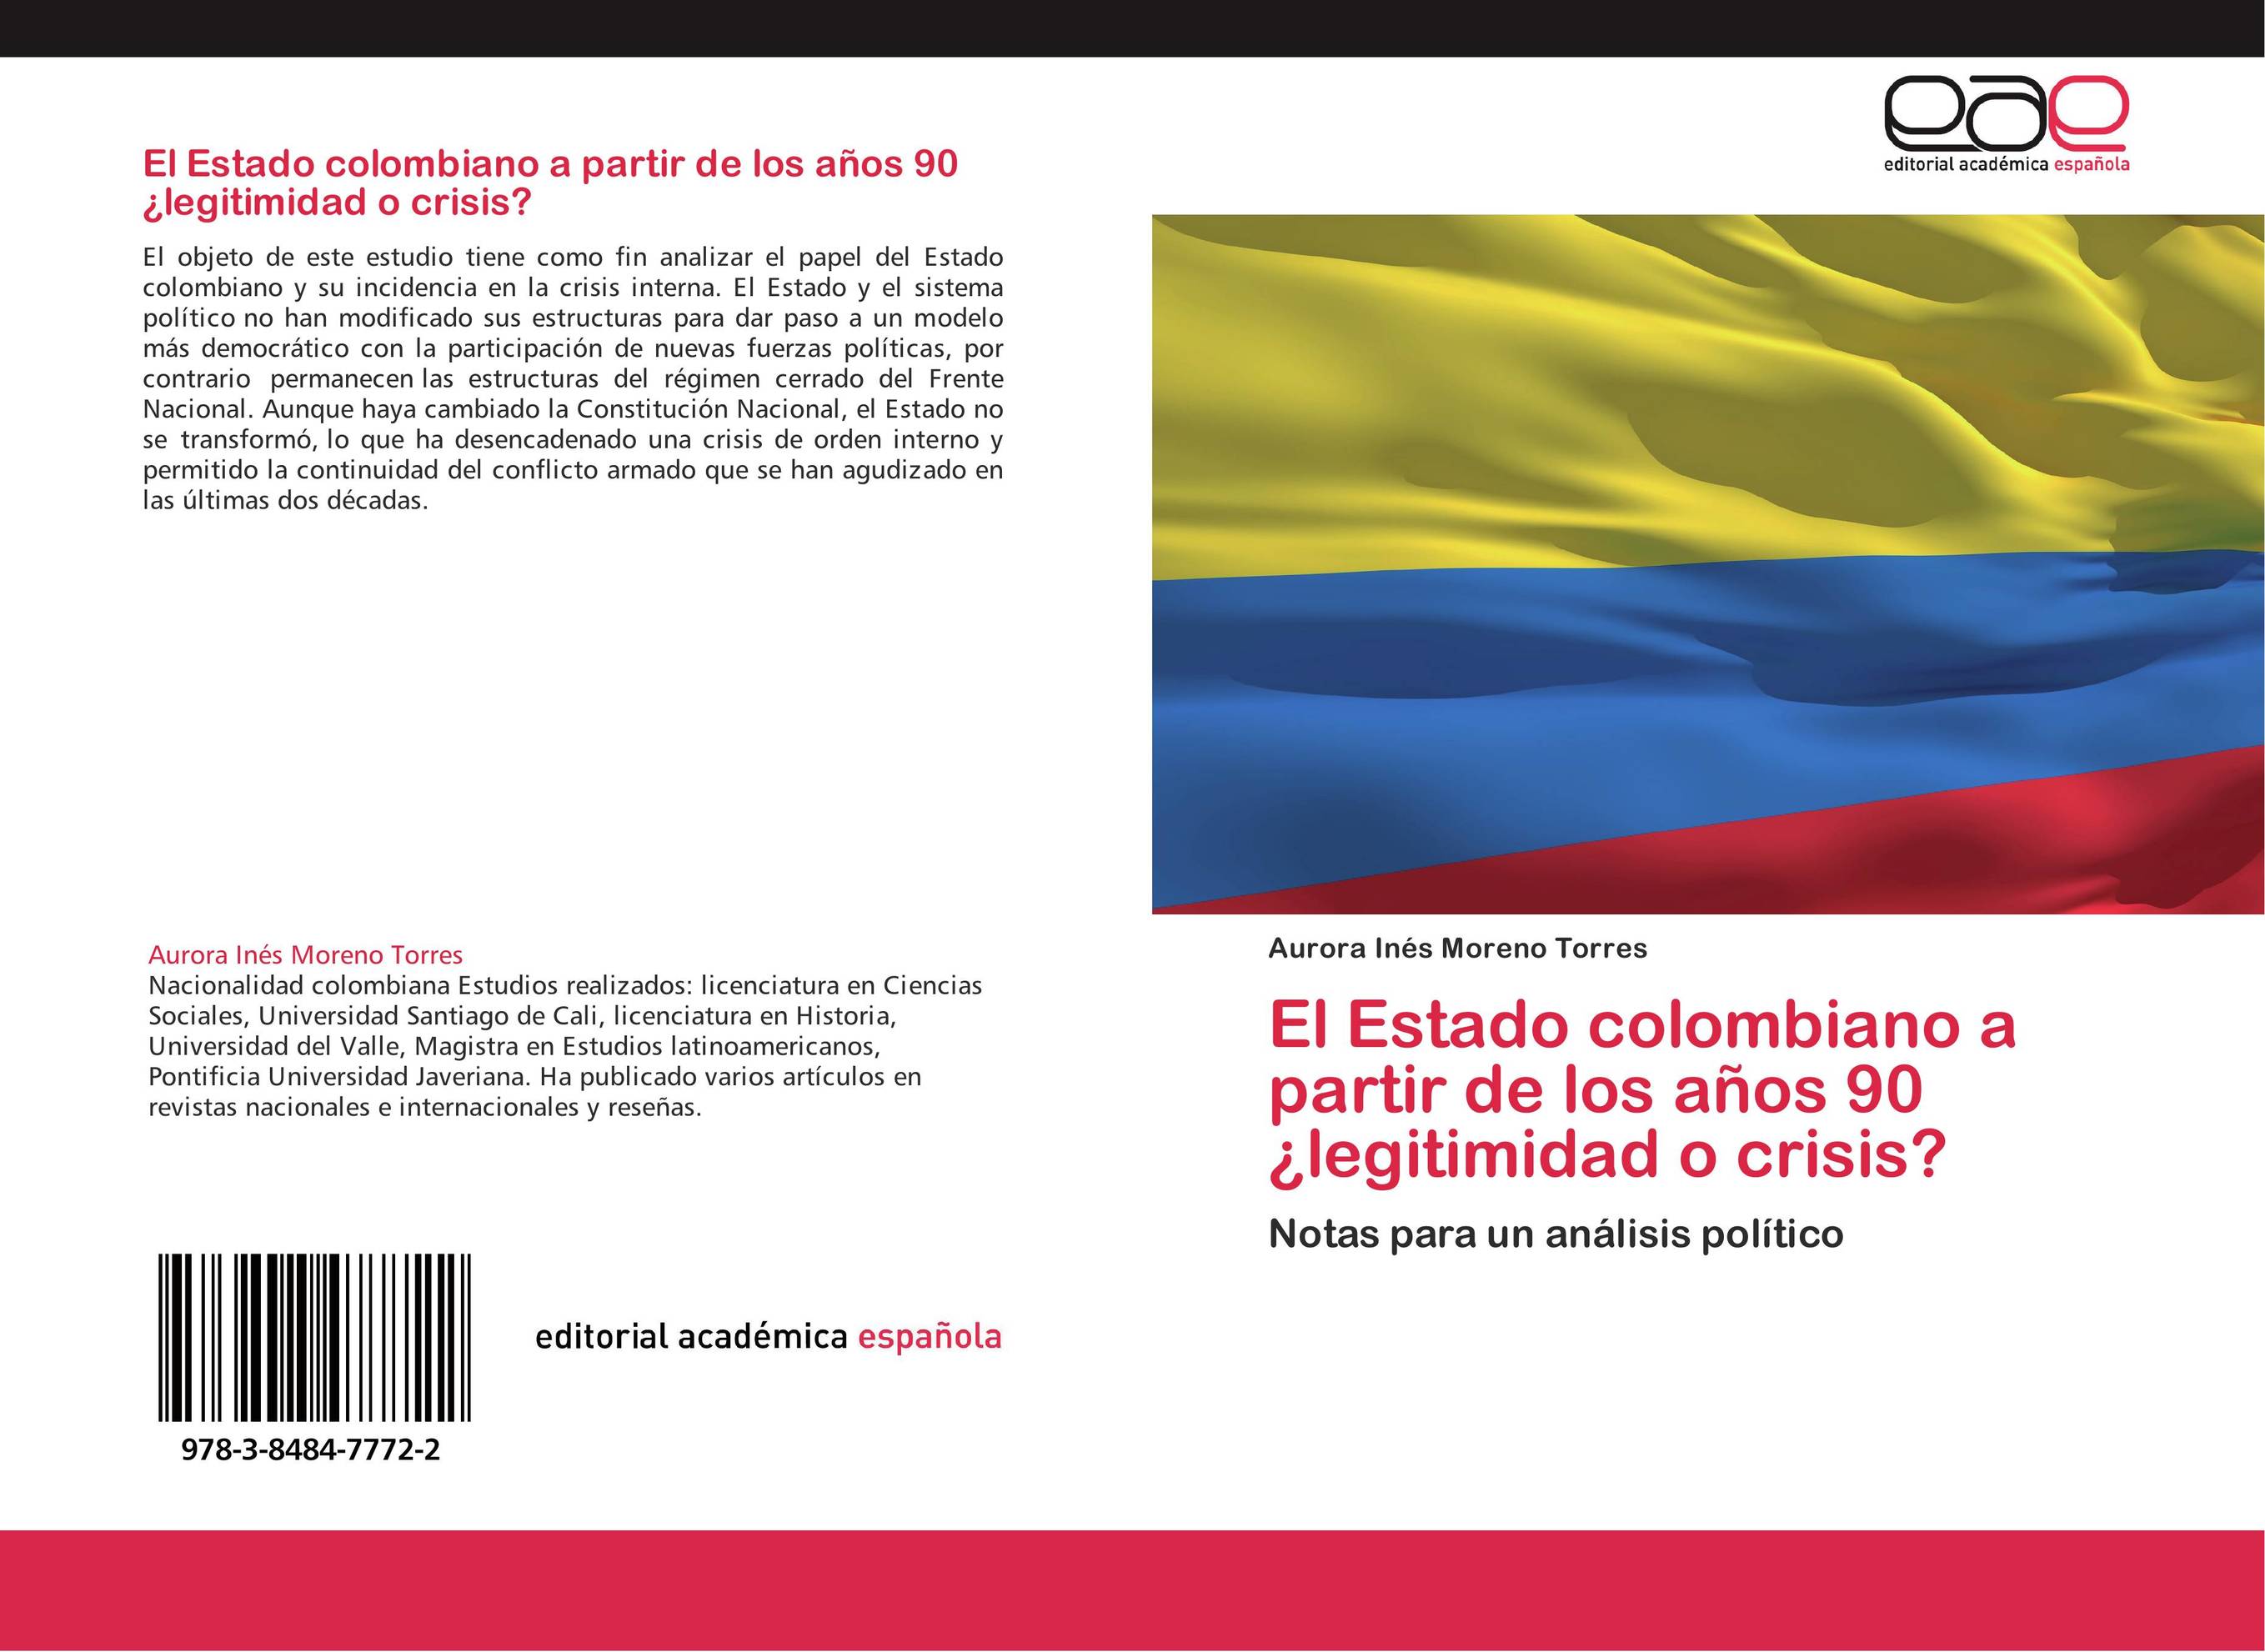 El Estado colombiano a partir de los años 90 ¿legitimidad o crisis?